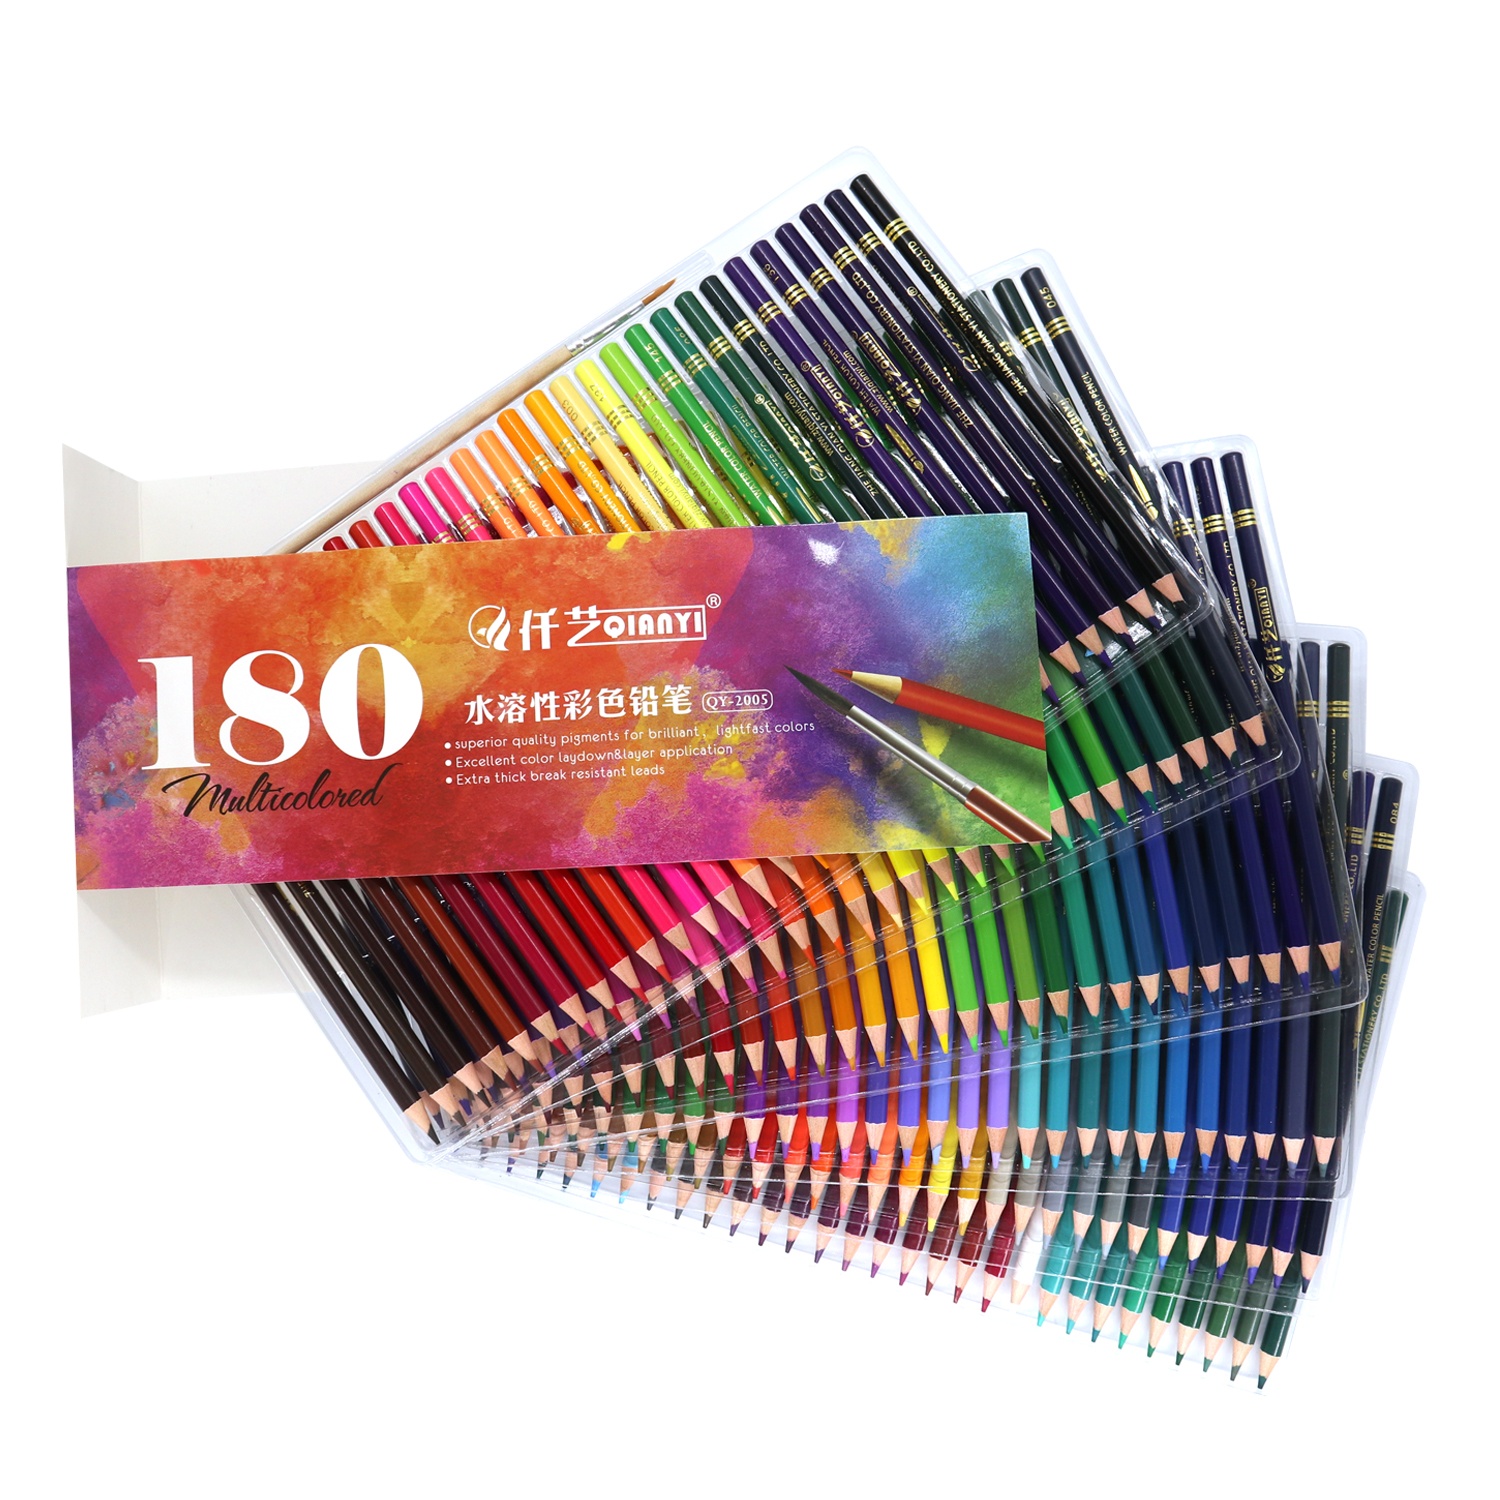 البيع بالجملة 180 ألوان أقلام ملونة قابلة للذوبان في الماء جودة قلم رصاص ملون للطلاء Art Painting1